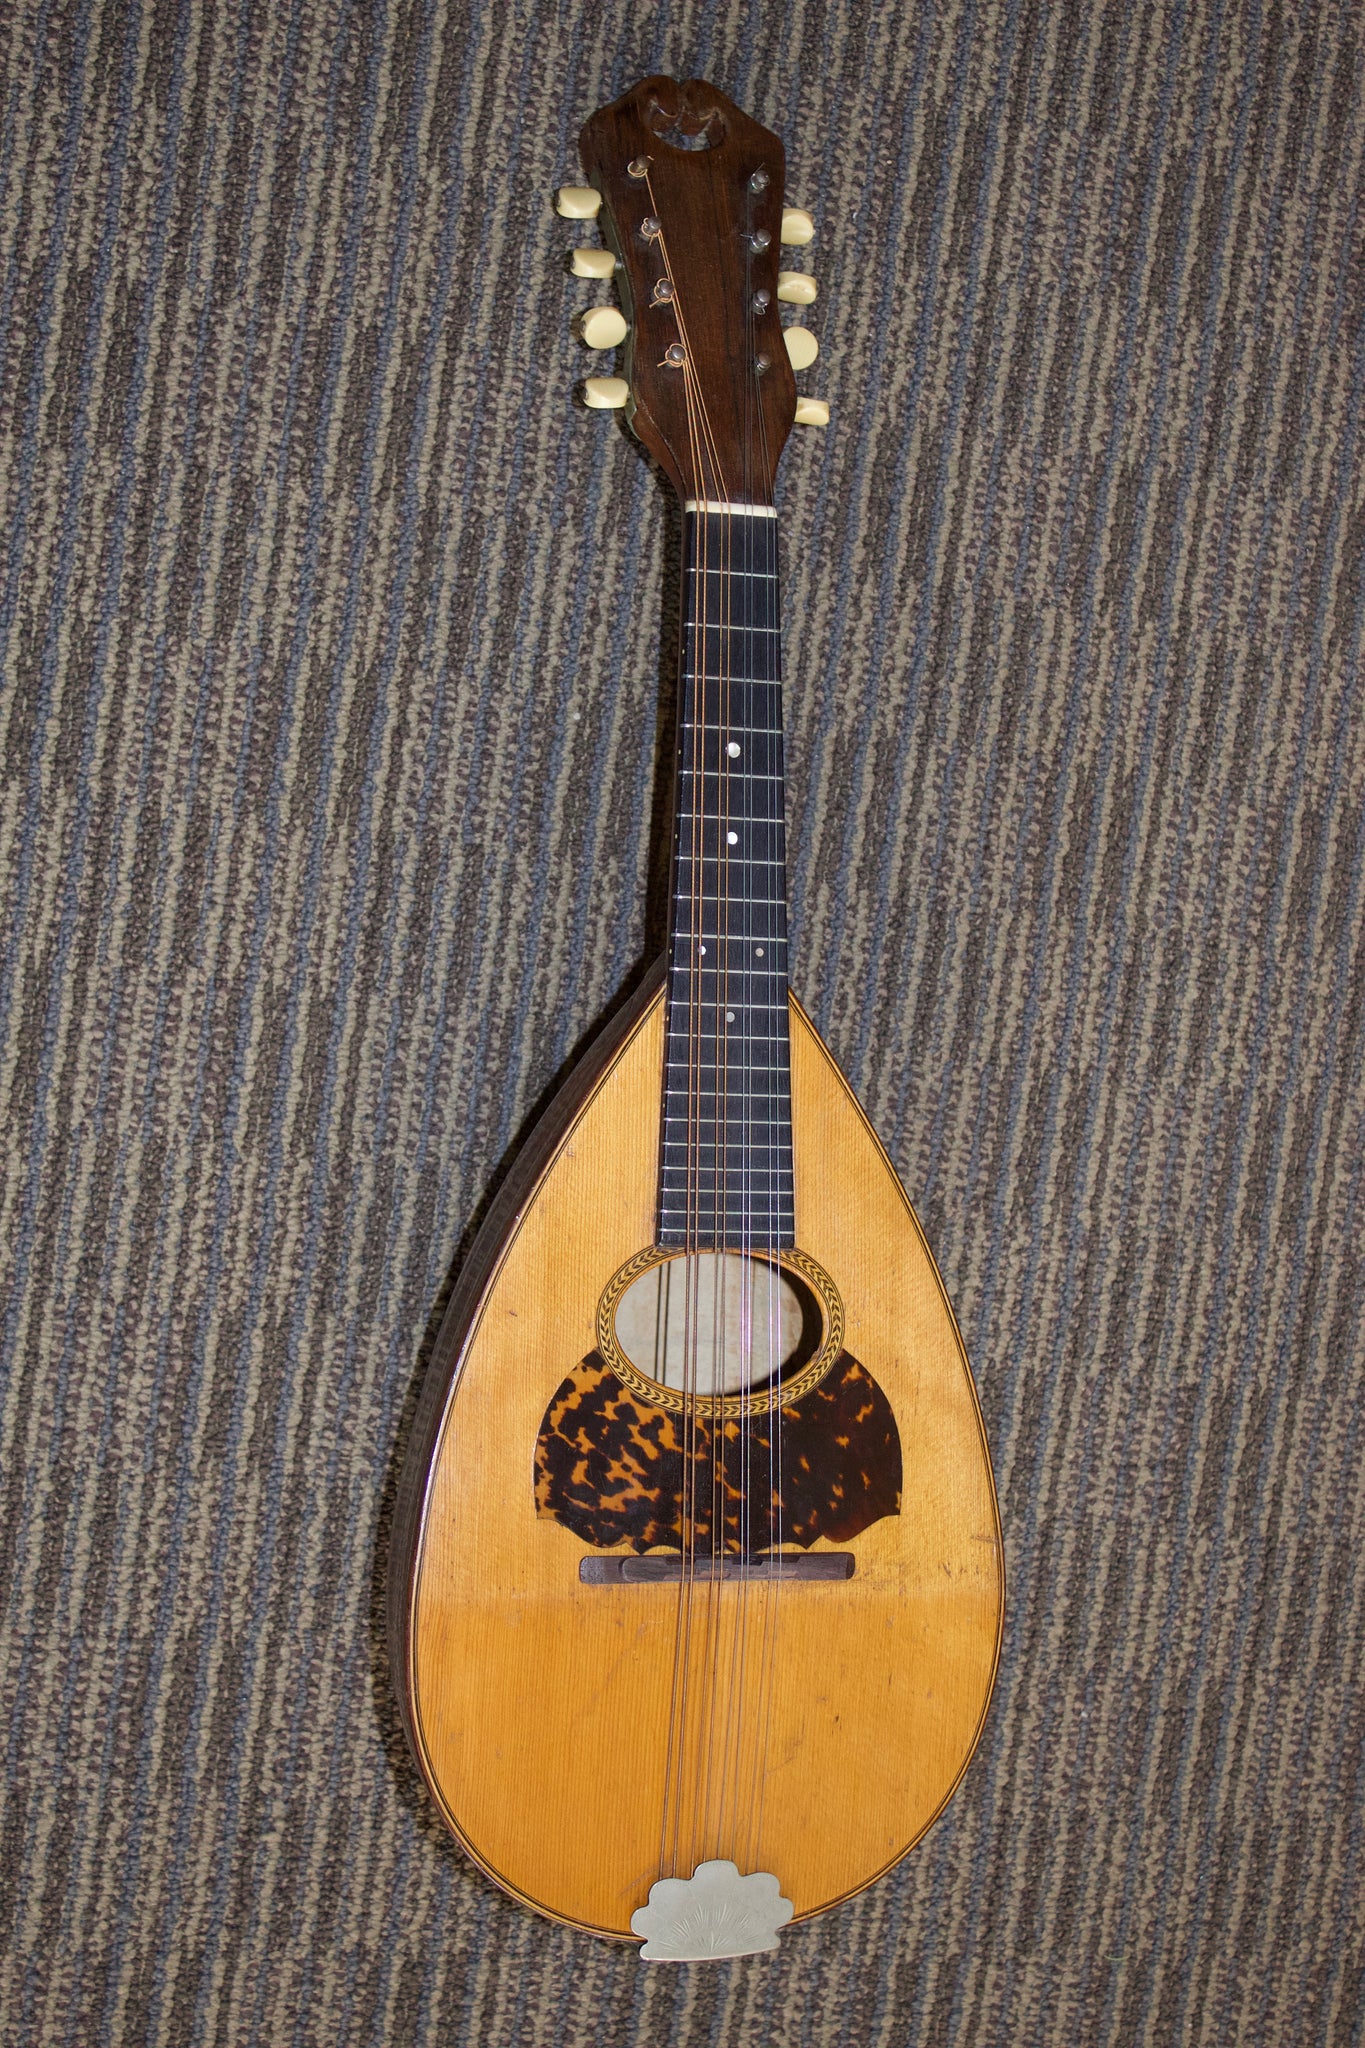 Vintage Mandolin Miniature, Wooden Mandolin Miniature, Musical